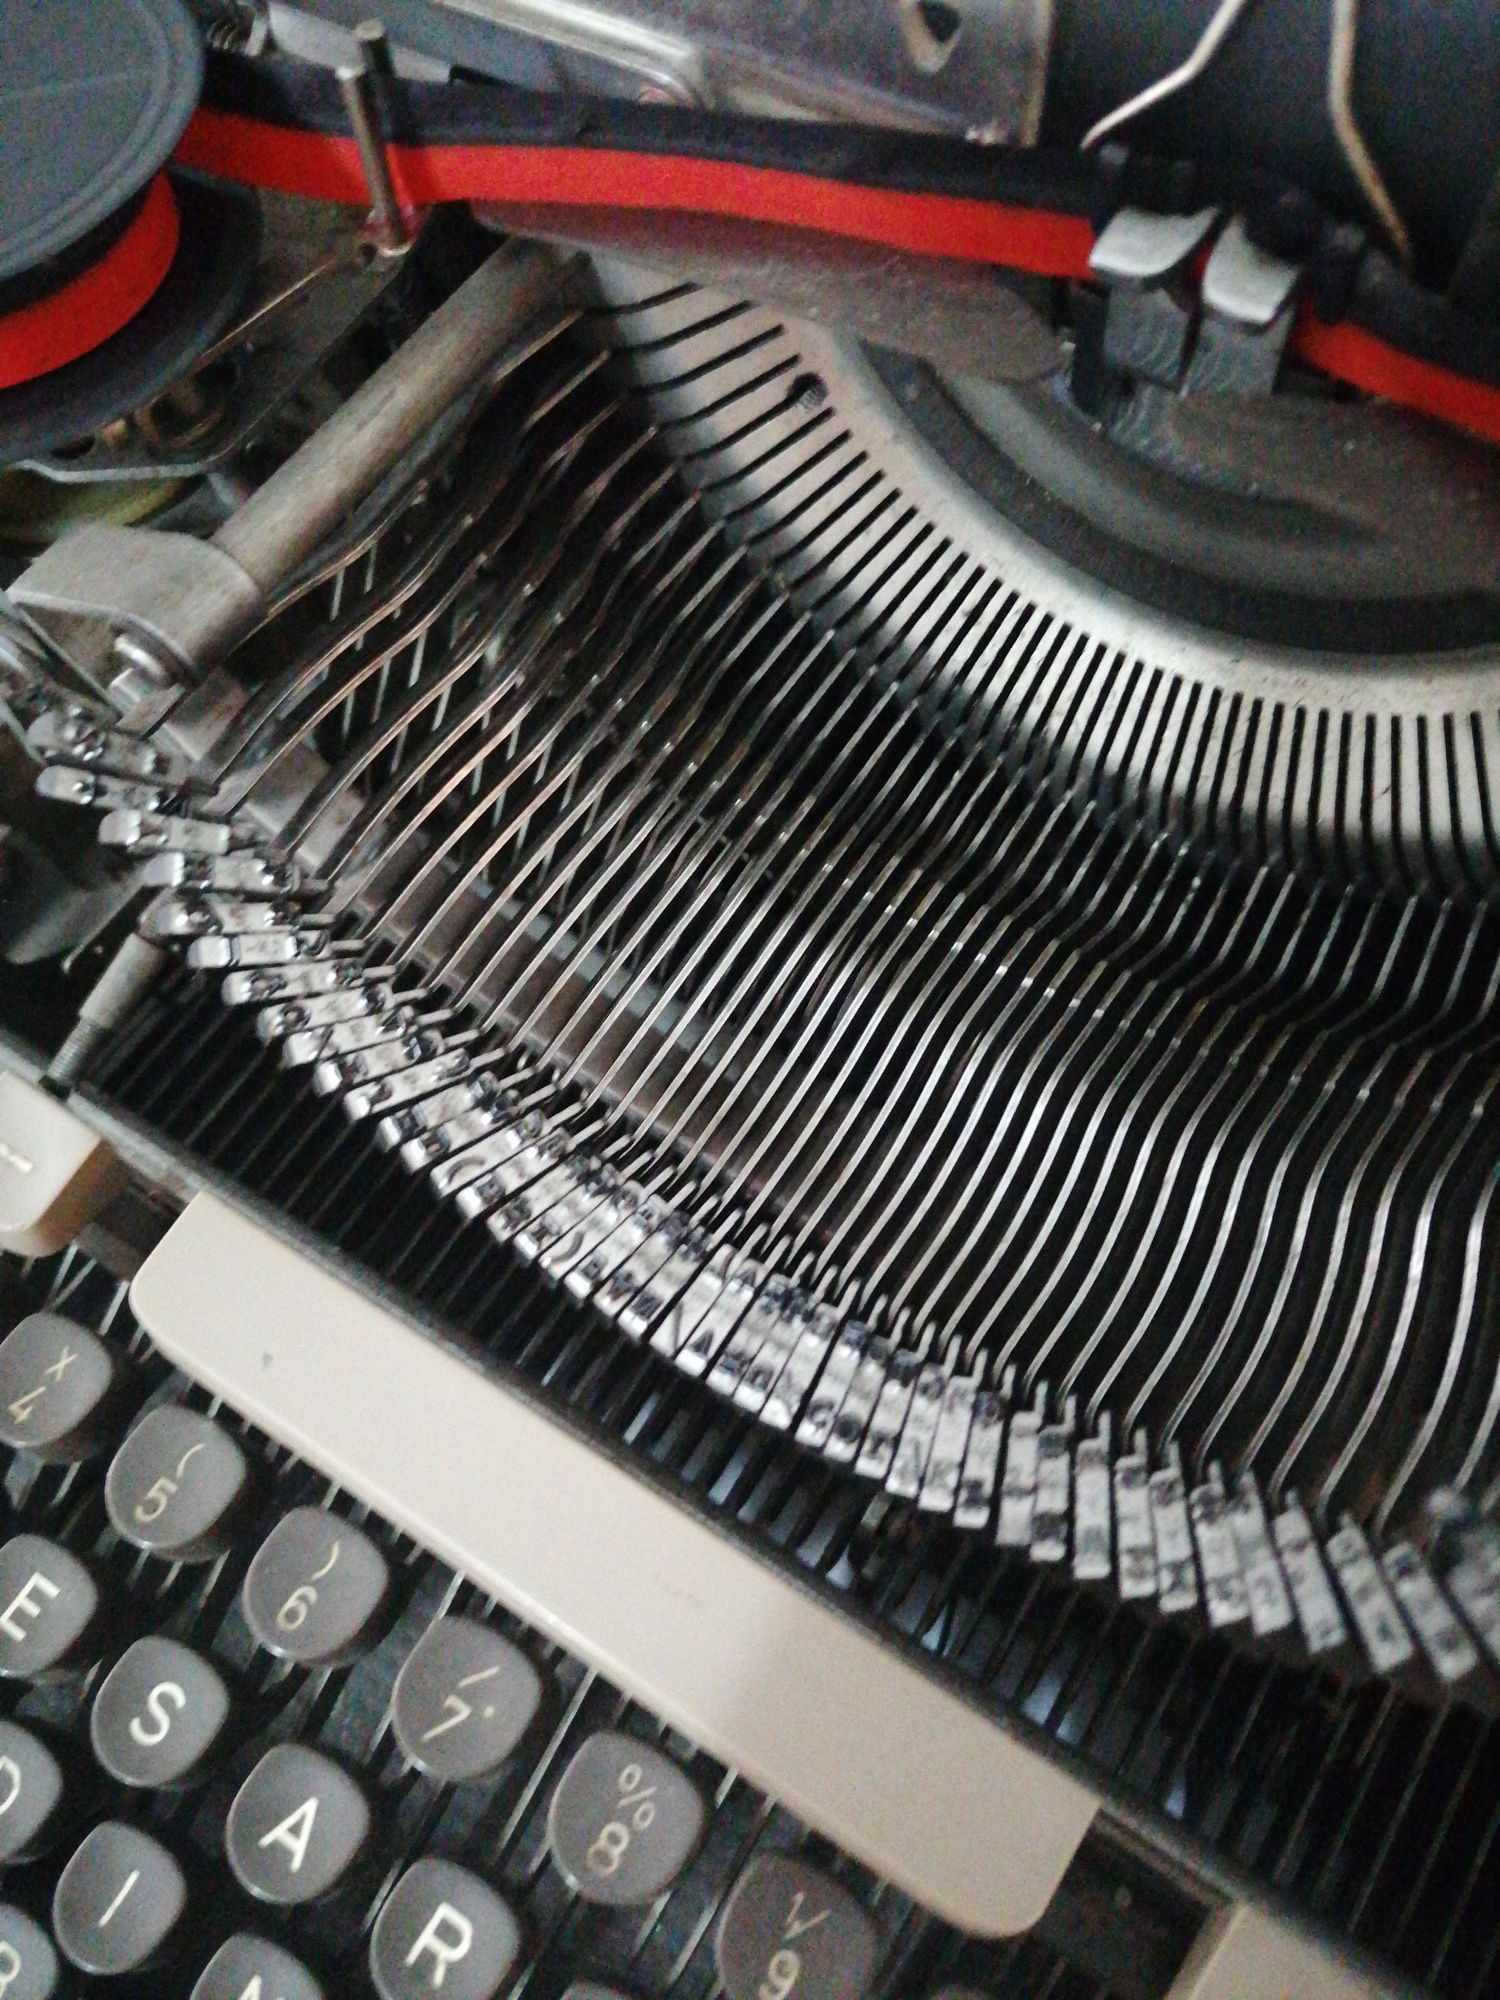 Máquina escrever